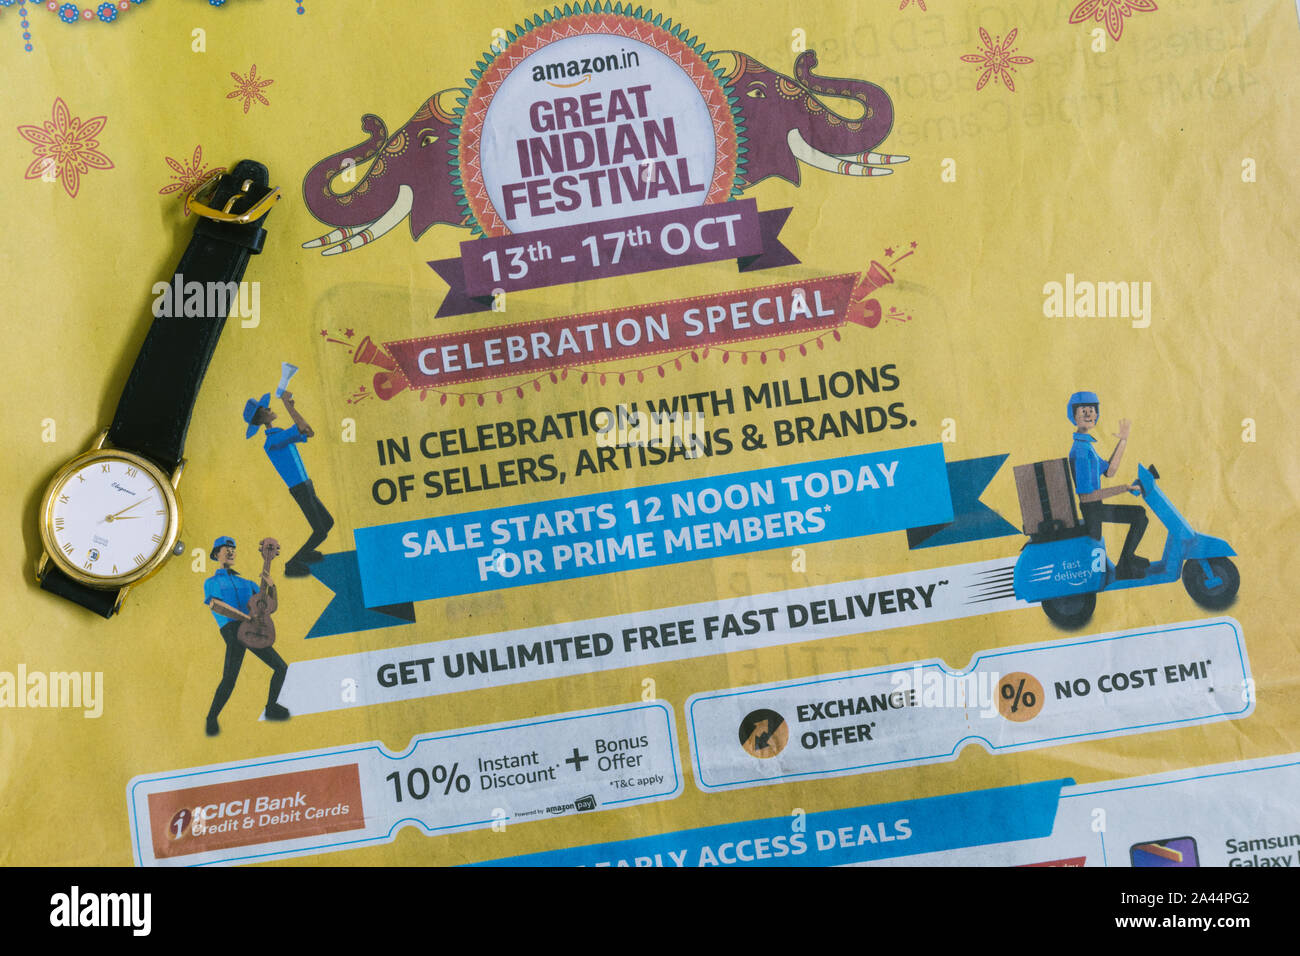 Hyderabad, India.12 de Octubre,2019. Portada anuncio de Amazon gran festival indio en el periódico hindú.Editorial ilustrativos. Foto de stock